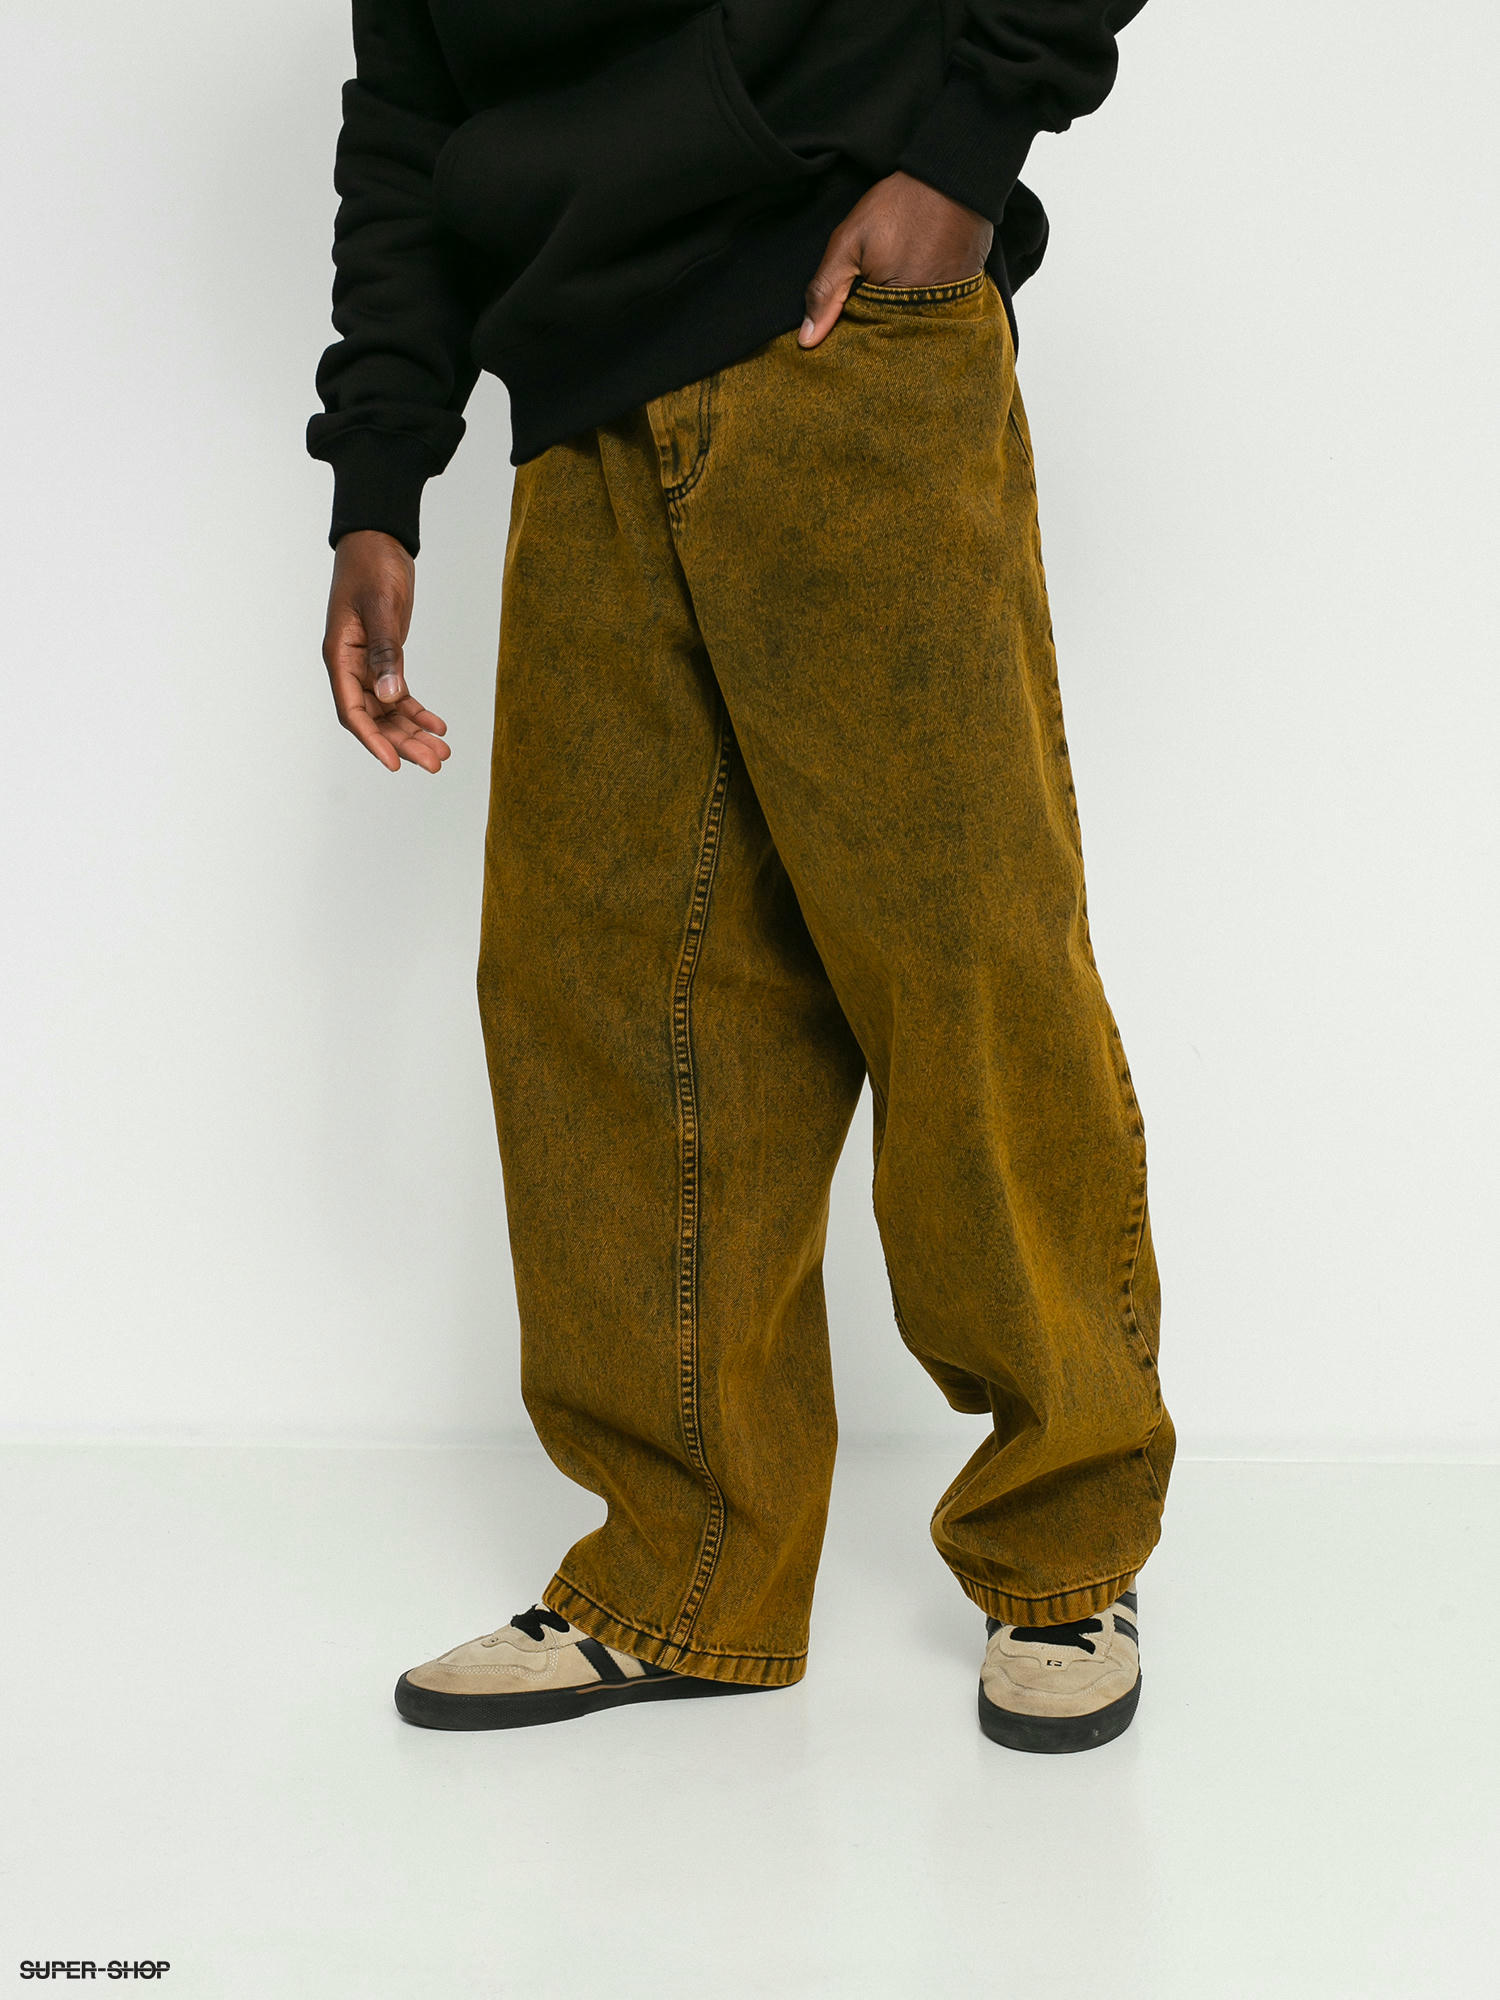 Polar Skate Big Boy Jeans Pants (yellow/black)